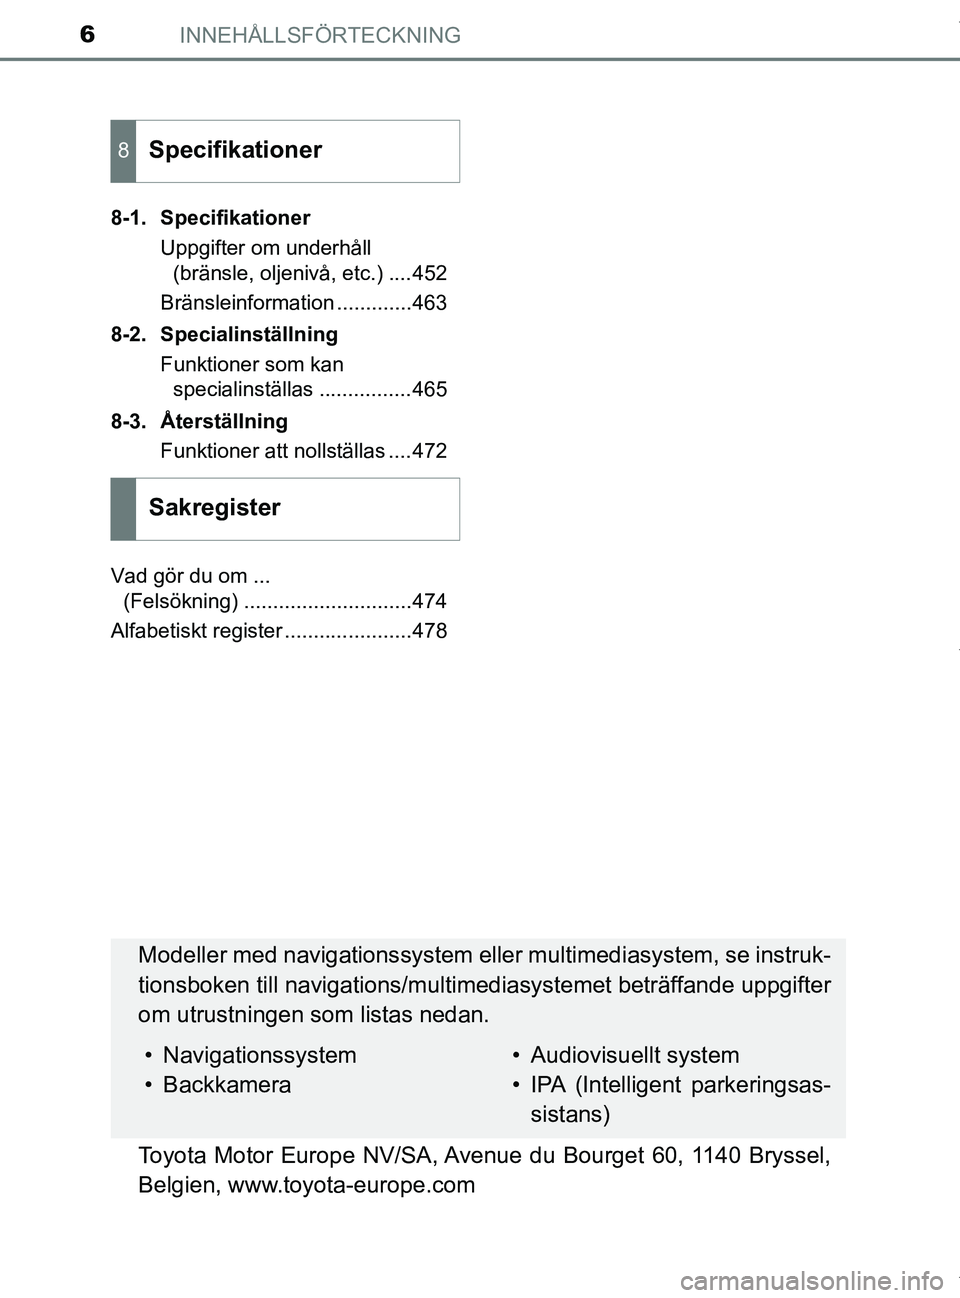 TOYOTA PRIUS PLUS 2019  Bruksanvisningar (in Swedish) INNEHÅLLSFÖRTECKNING6
PRIUS +_OM47D30SE8-1. Specifikationer
Uppgifter om underhåll (bränsle, oljenivå, etc.) ....452
Bränsleinformation .............463
8-2. Specialinställning Funktioner som k